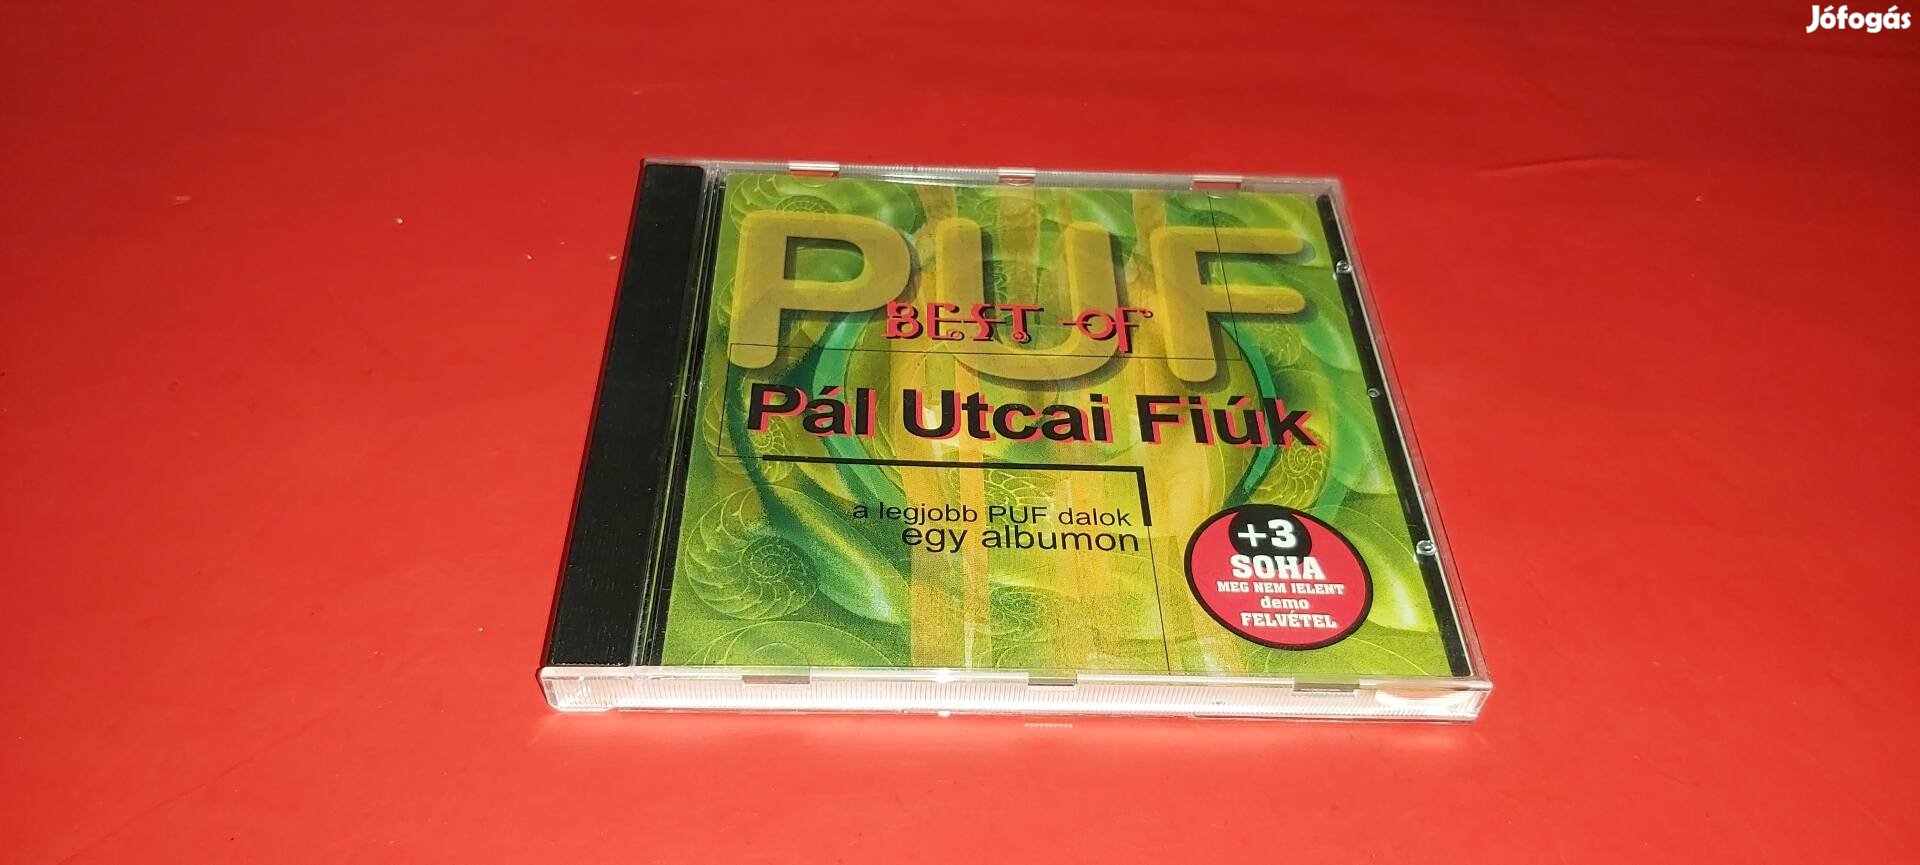 Pál Utcai Fiúk Best of Cd 1997